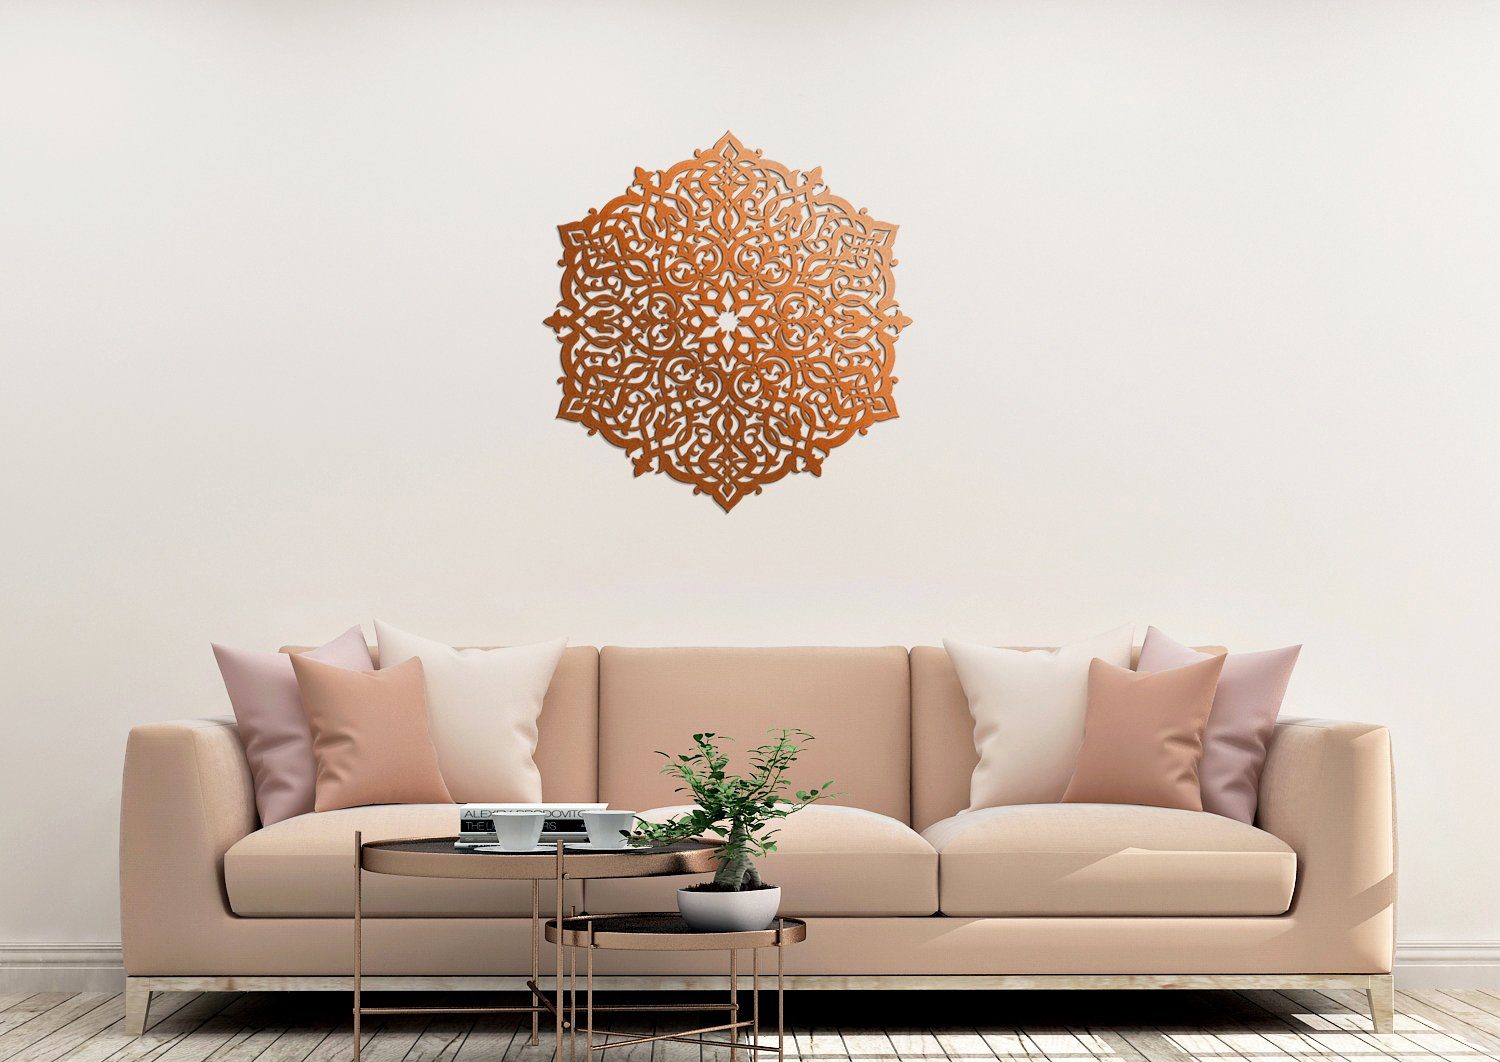 Handarbeit grosse RosetteHolzbild, 3D Wanddekoobjekt ORNAMENTI Marokkanische Wanddeko,